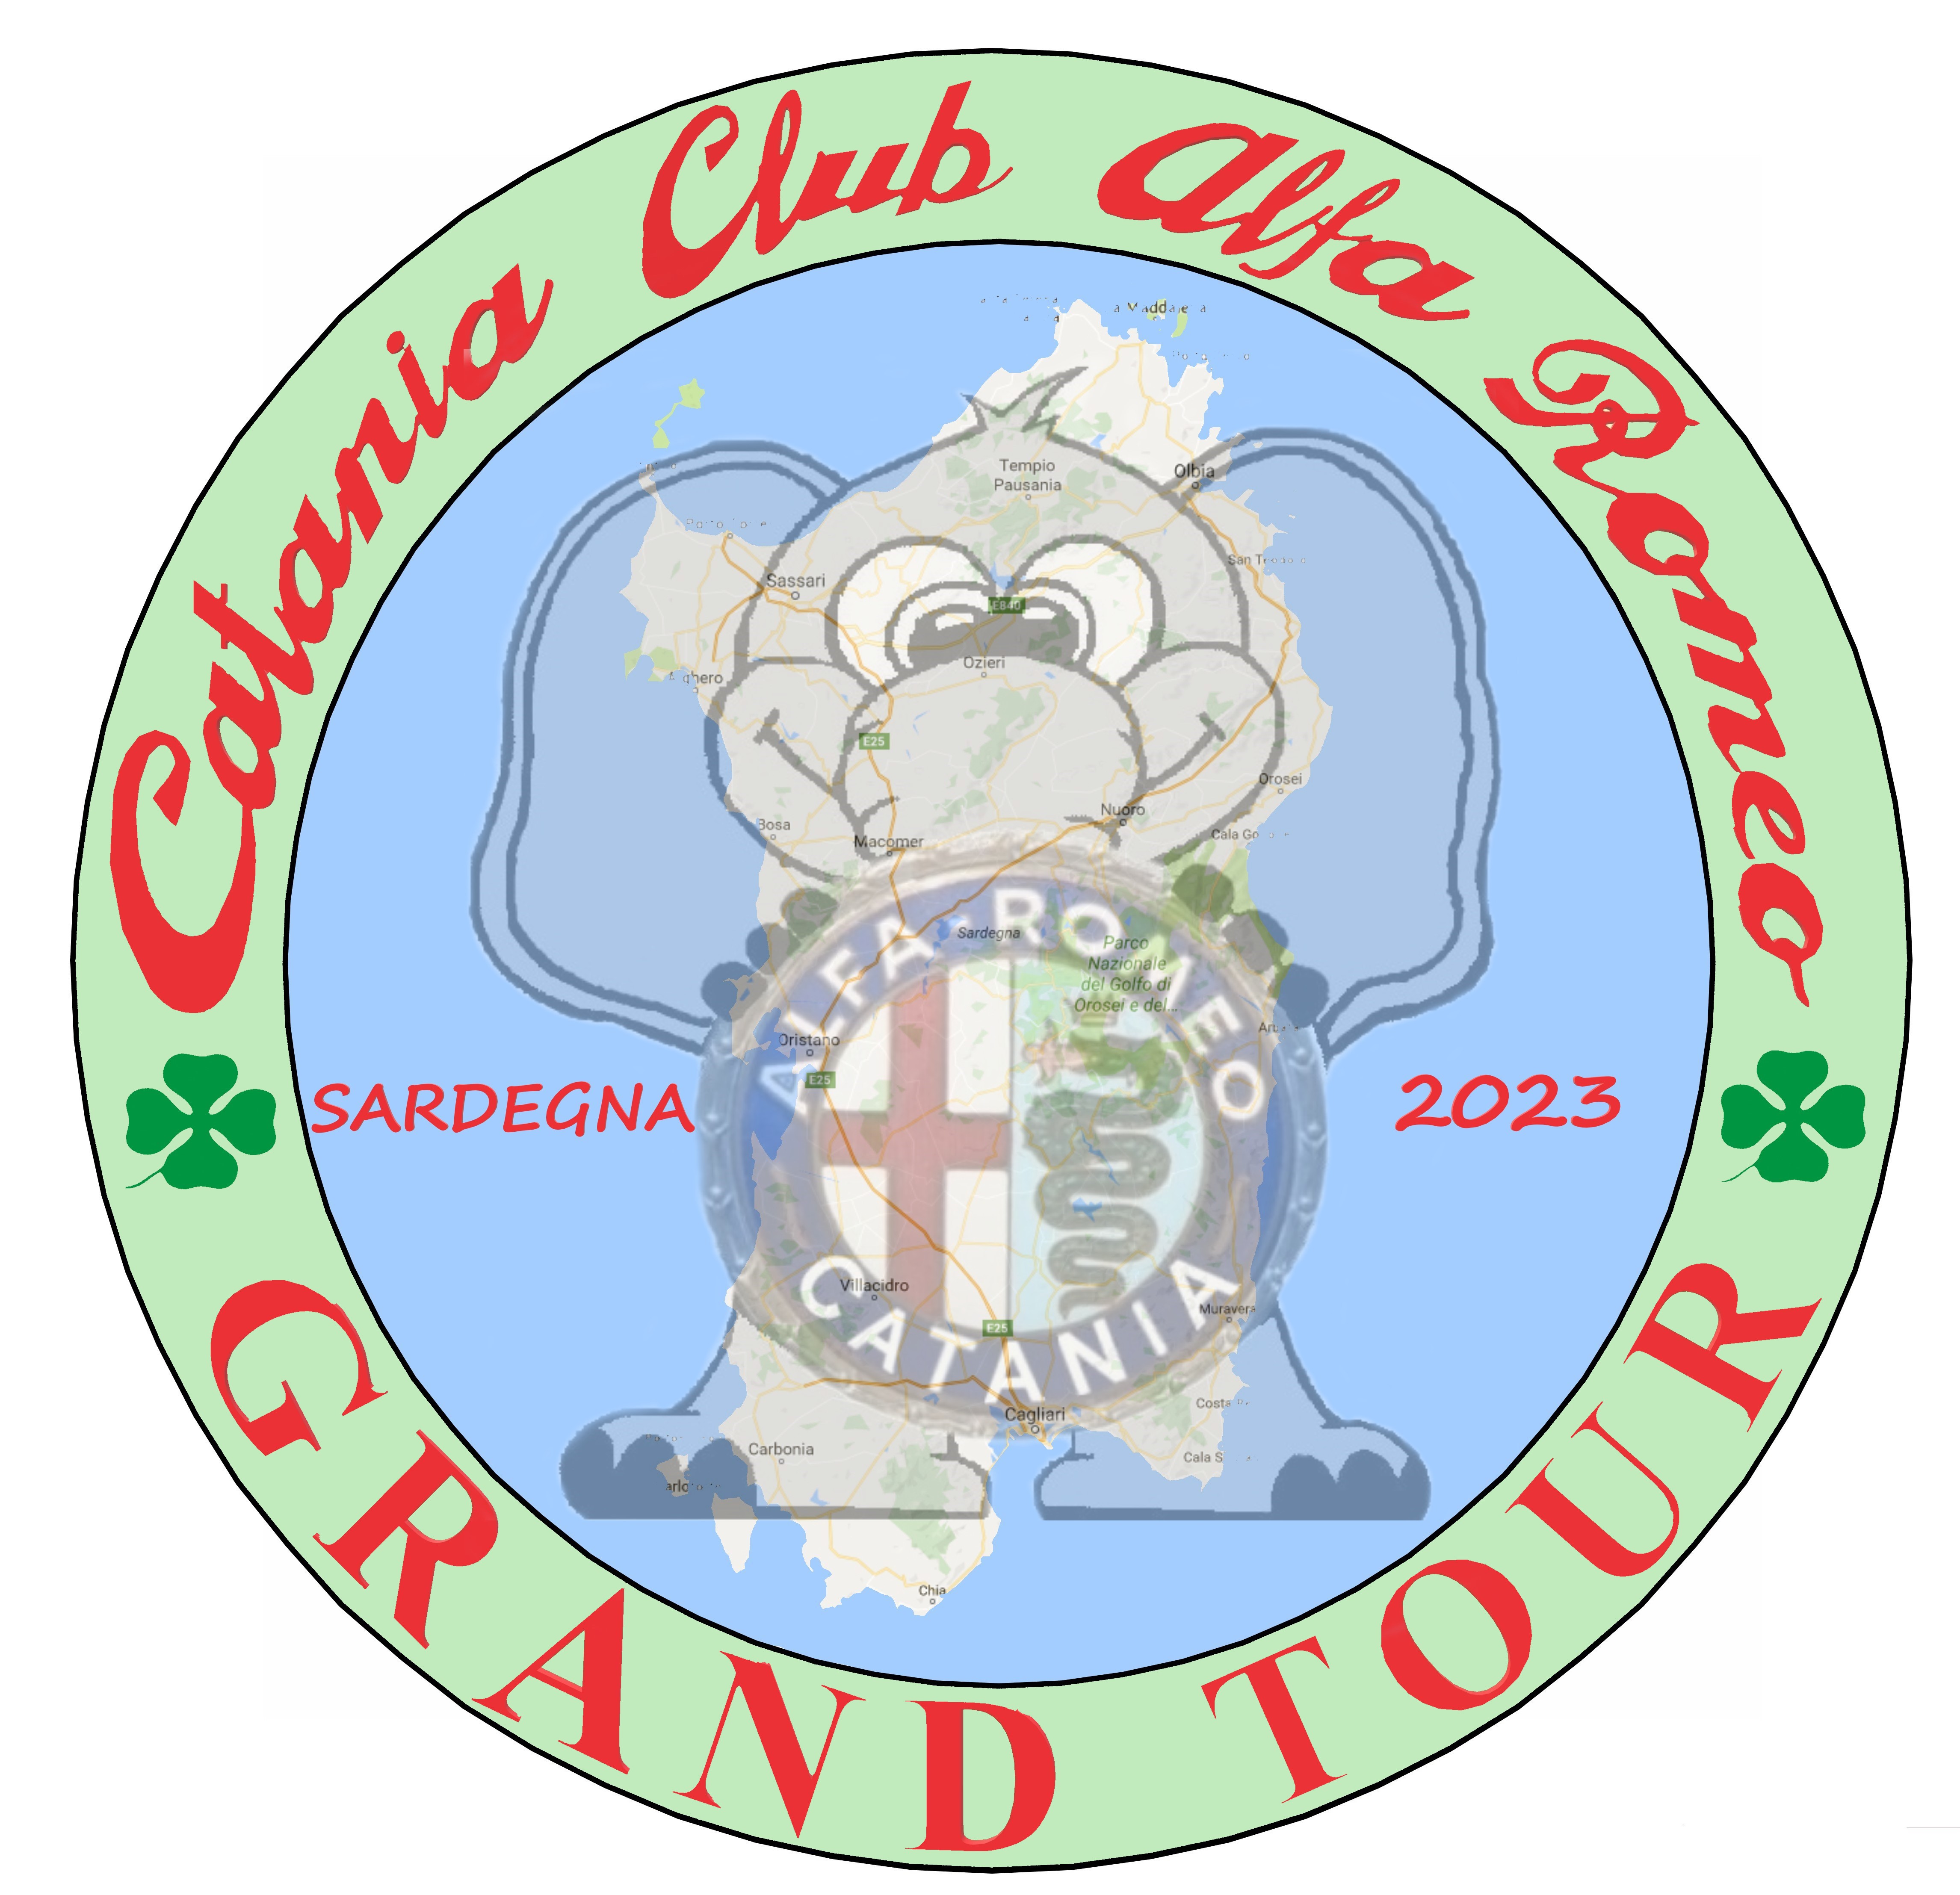 Grand Tour 2023 - Sardegna